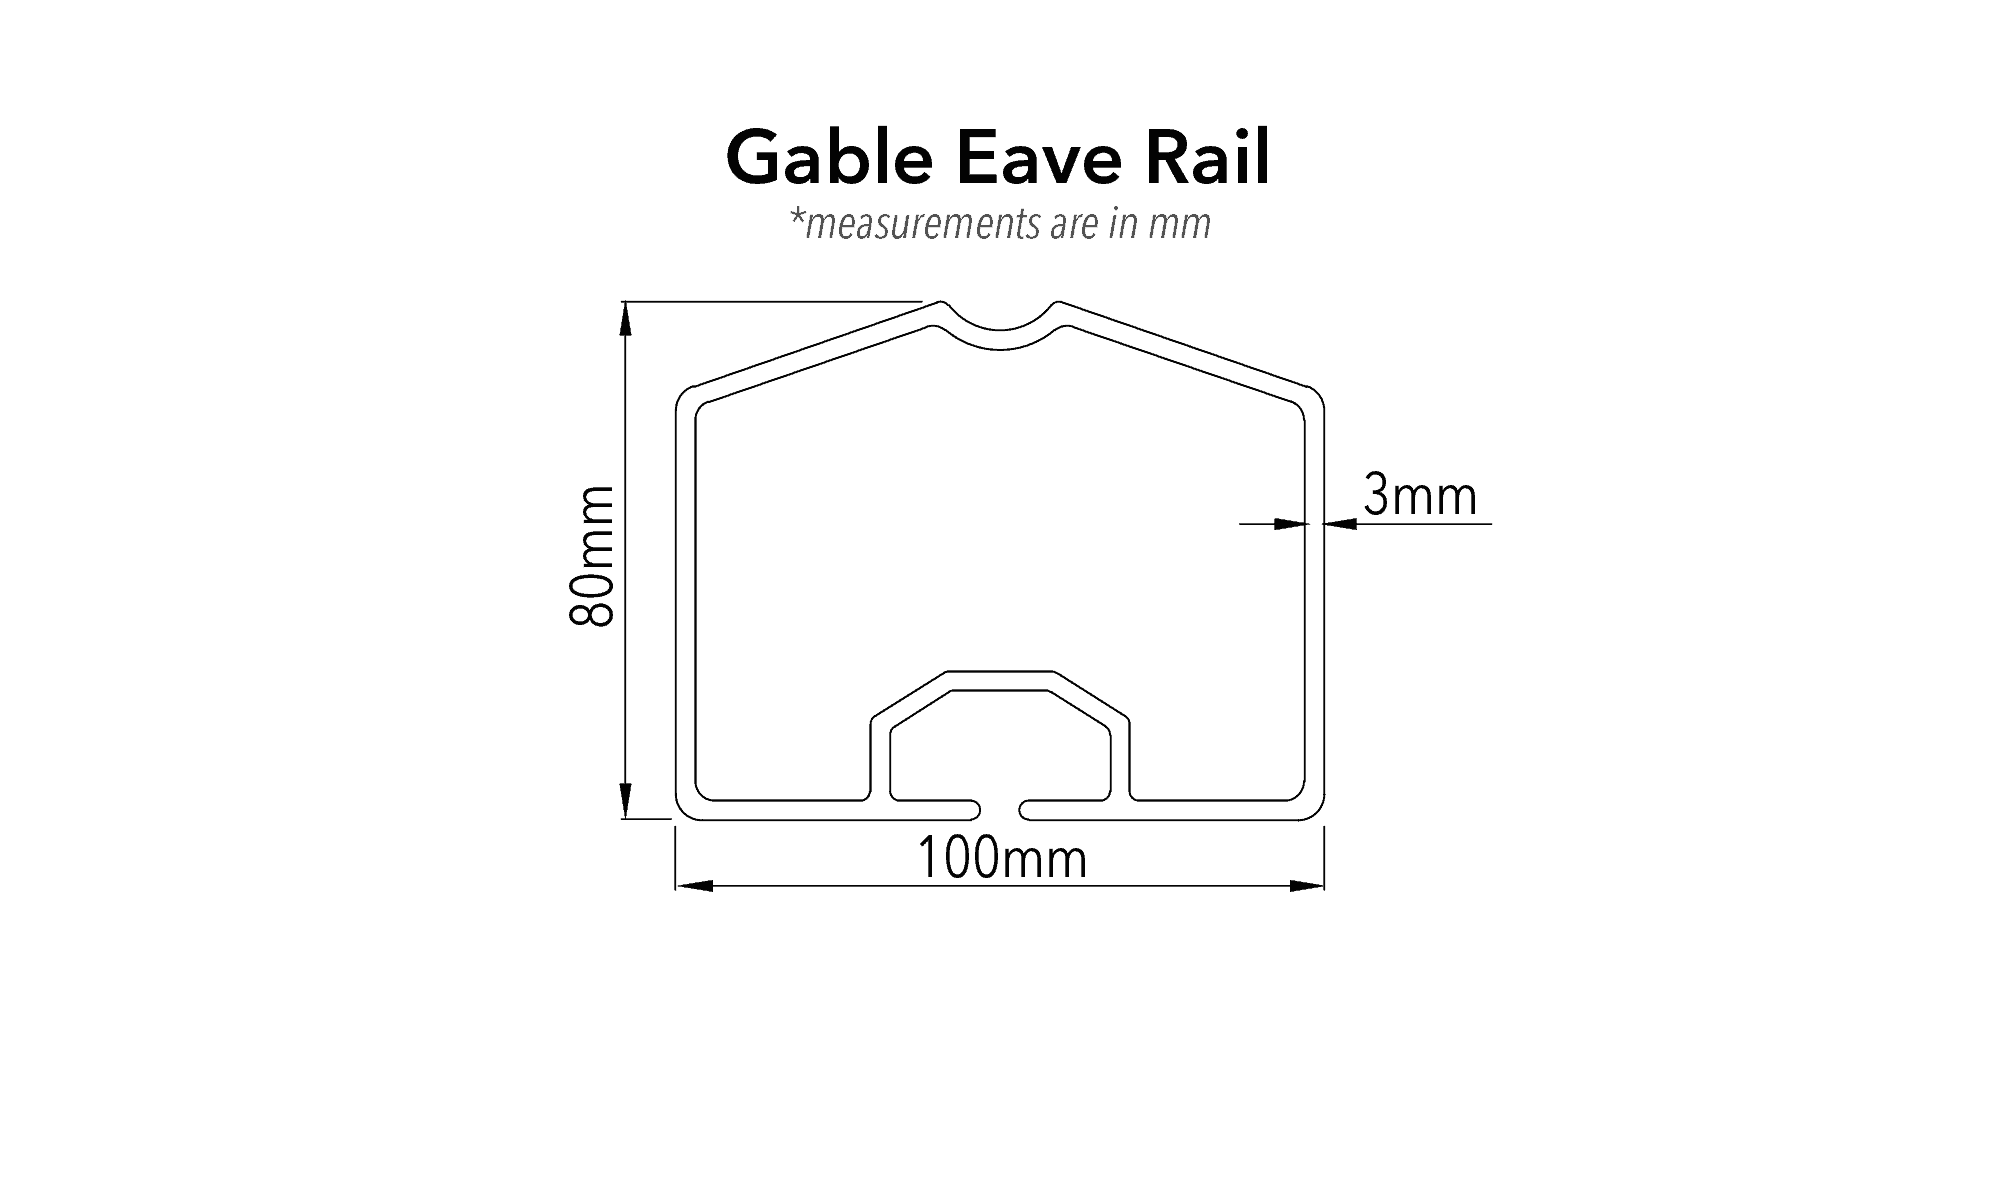 crest profiles ec 203 gable eave rail